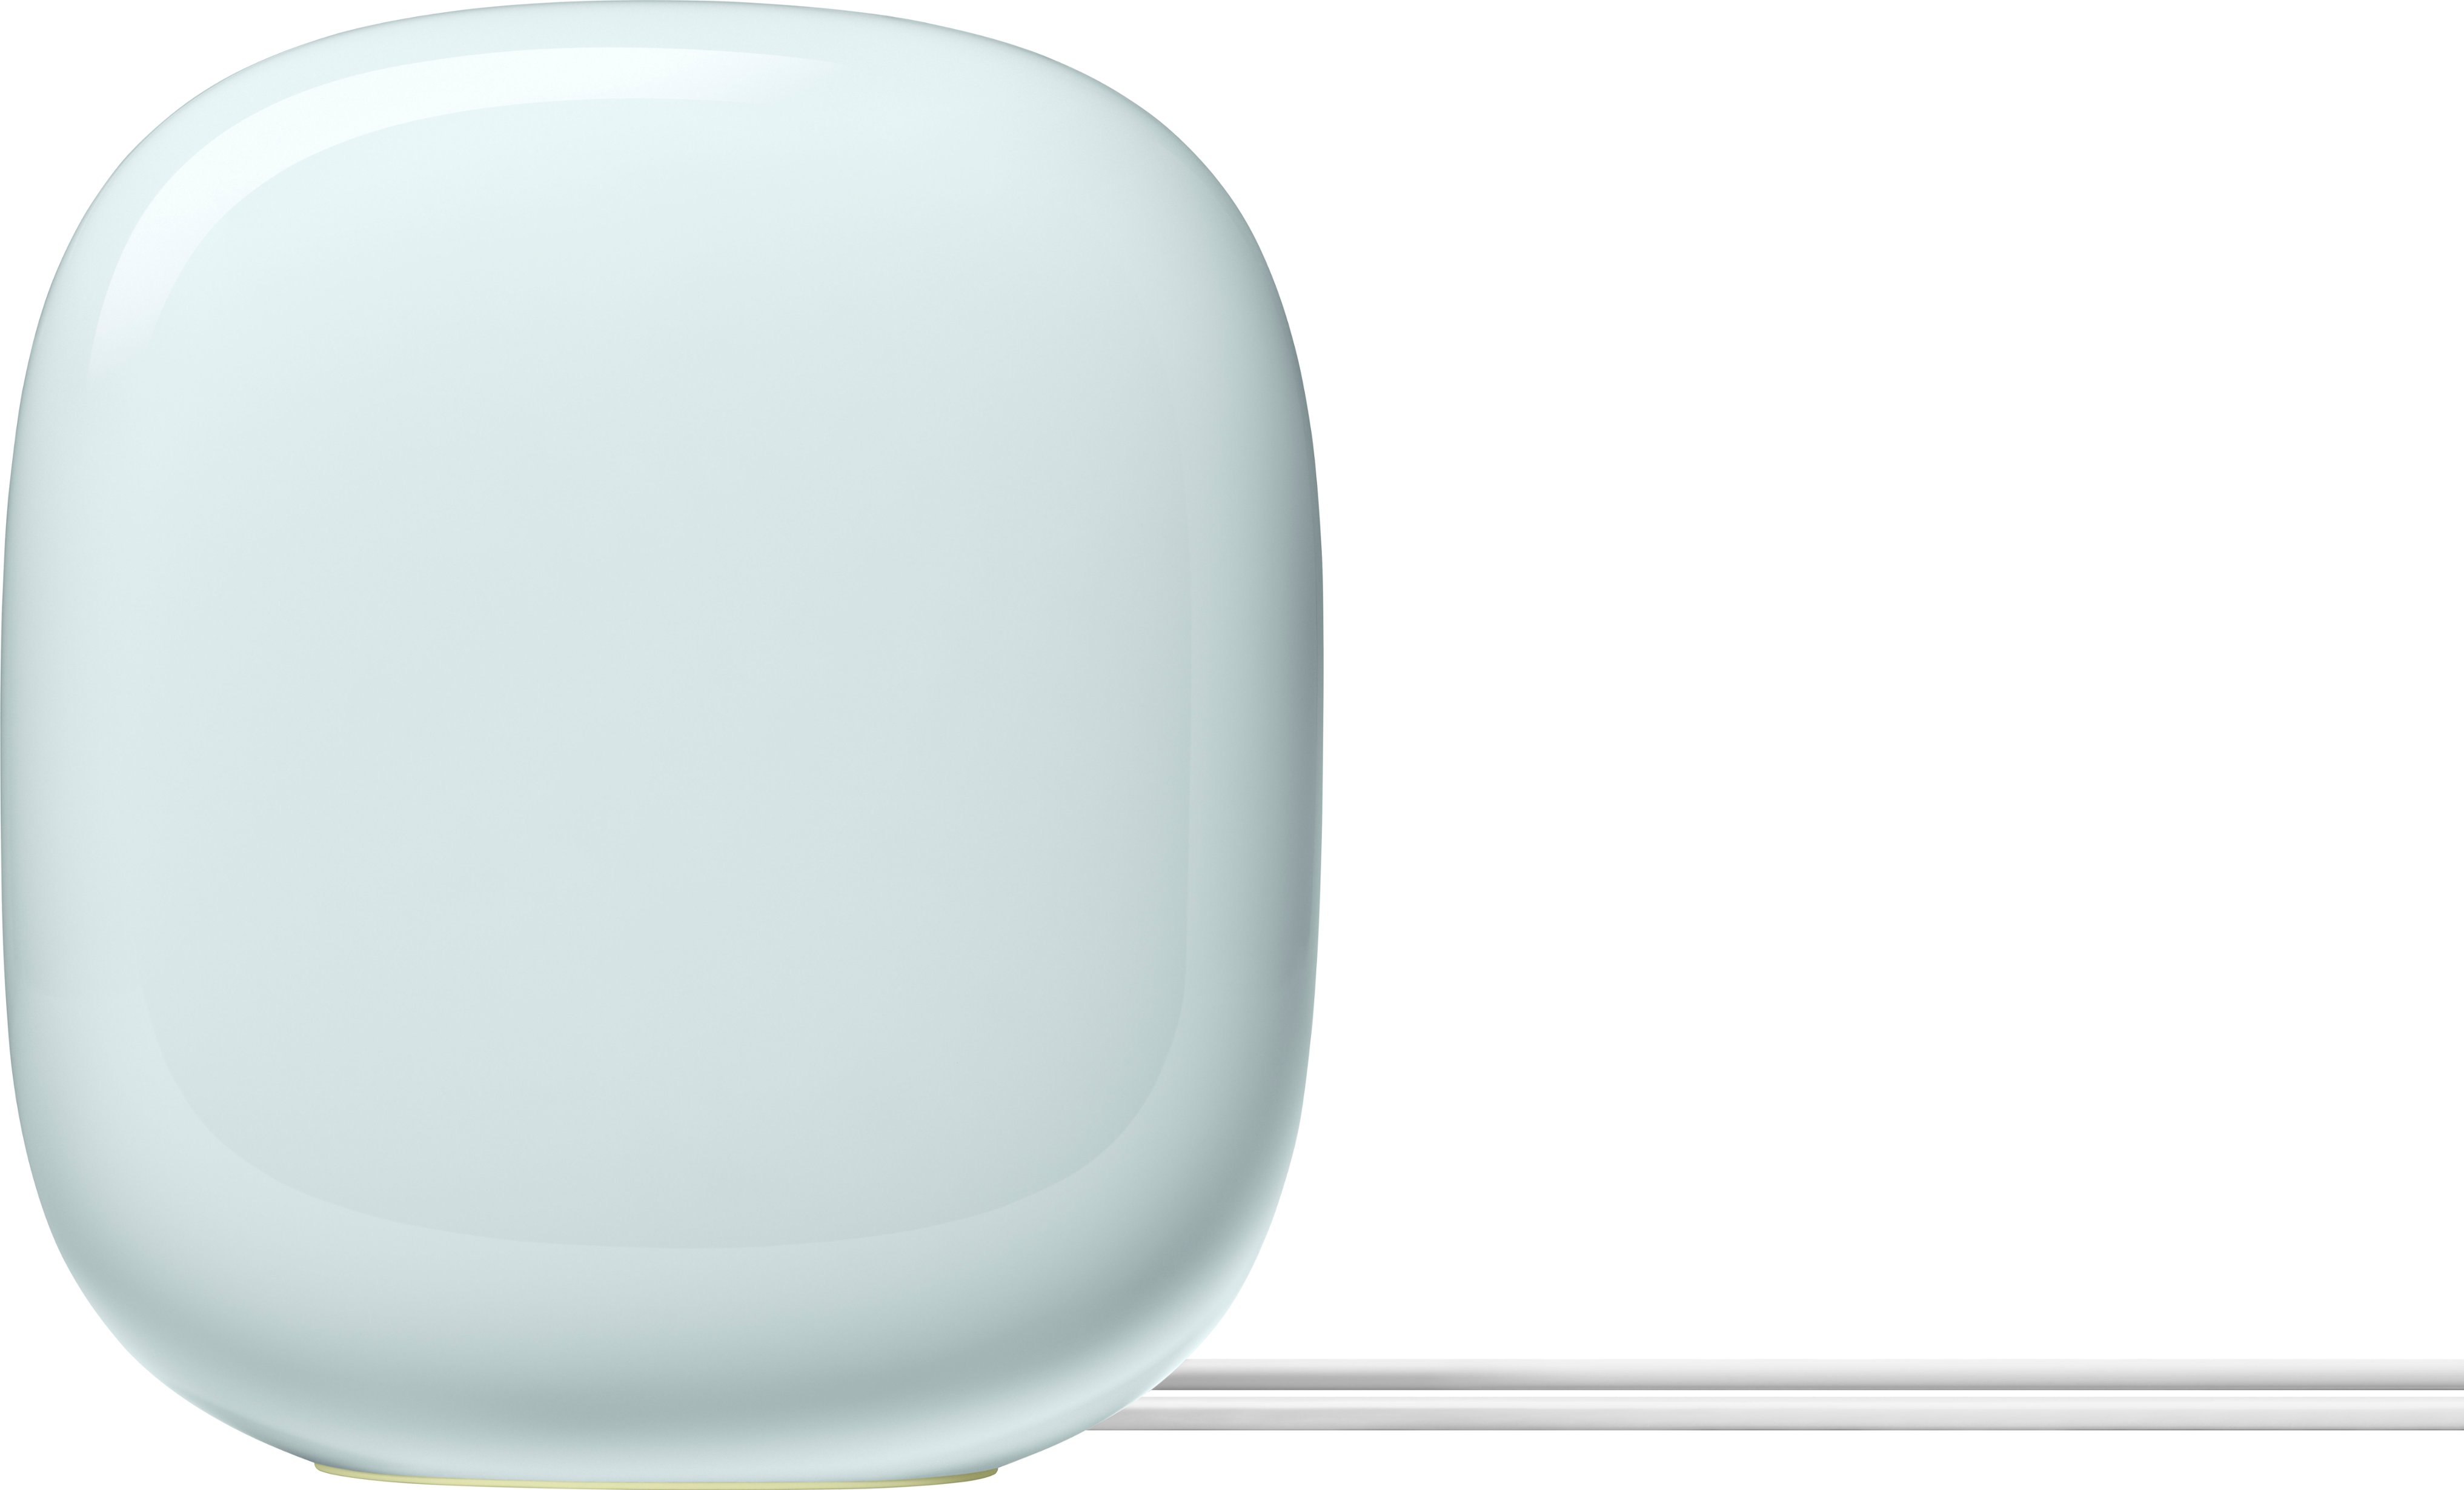 Google Nest Wifi Pro 6e AXE5400 Mesh Router Fog GA03902-US - Best Buy